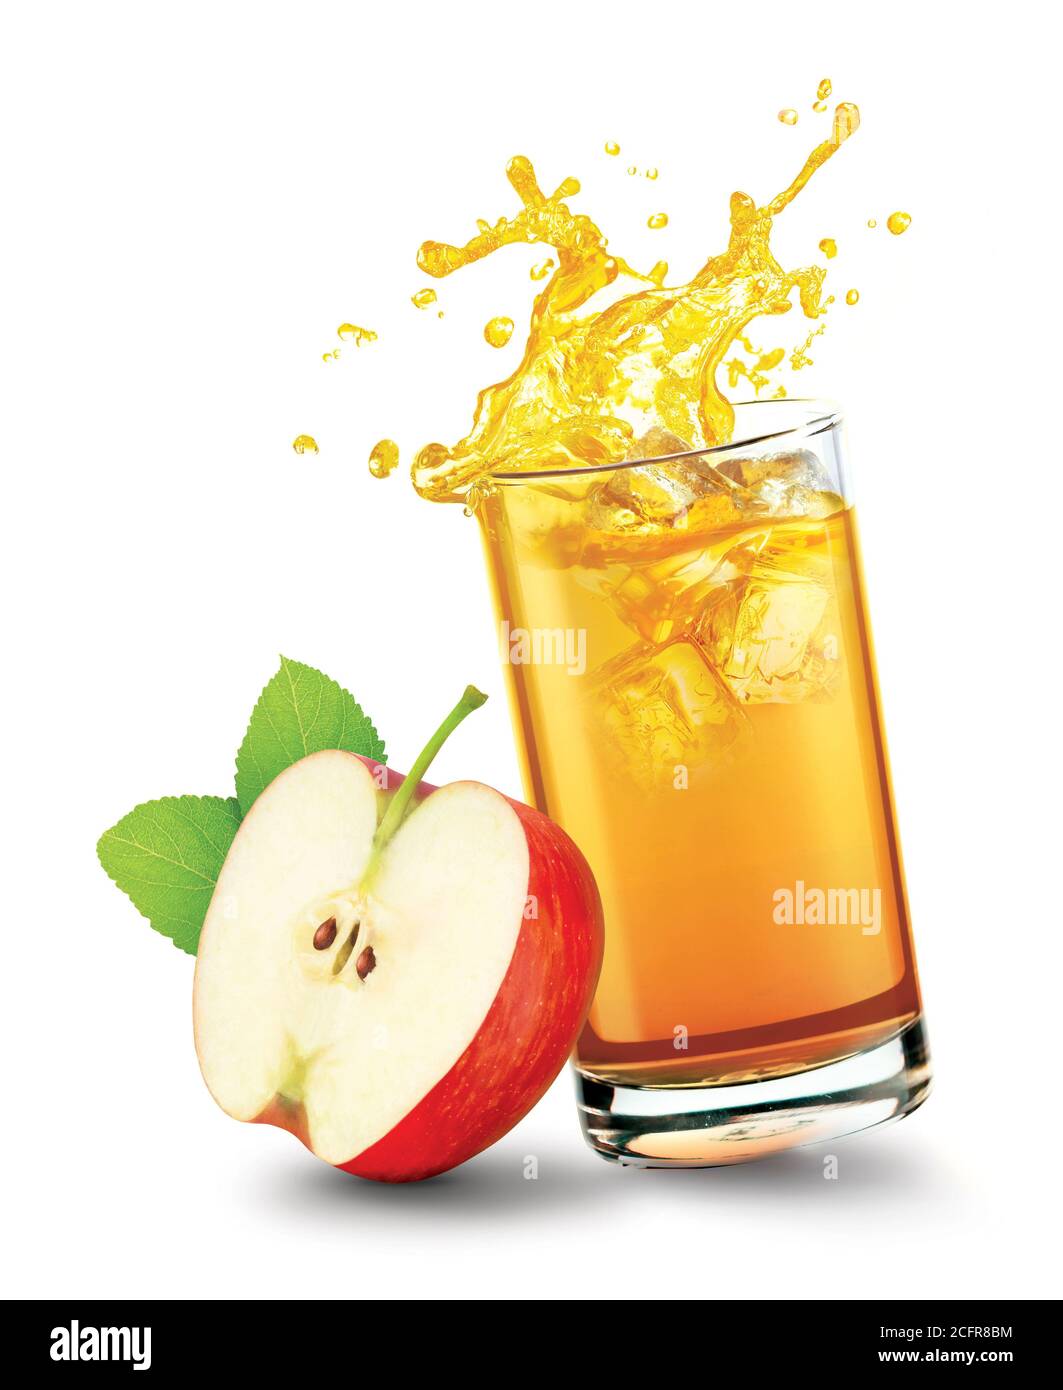 Glass of splashing apple juice with apple fruit on white background Stock Photo